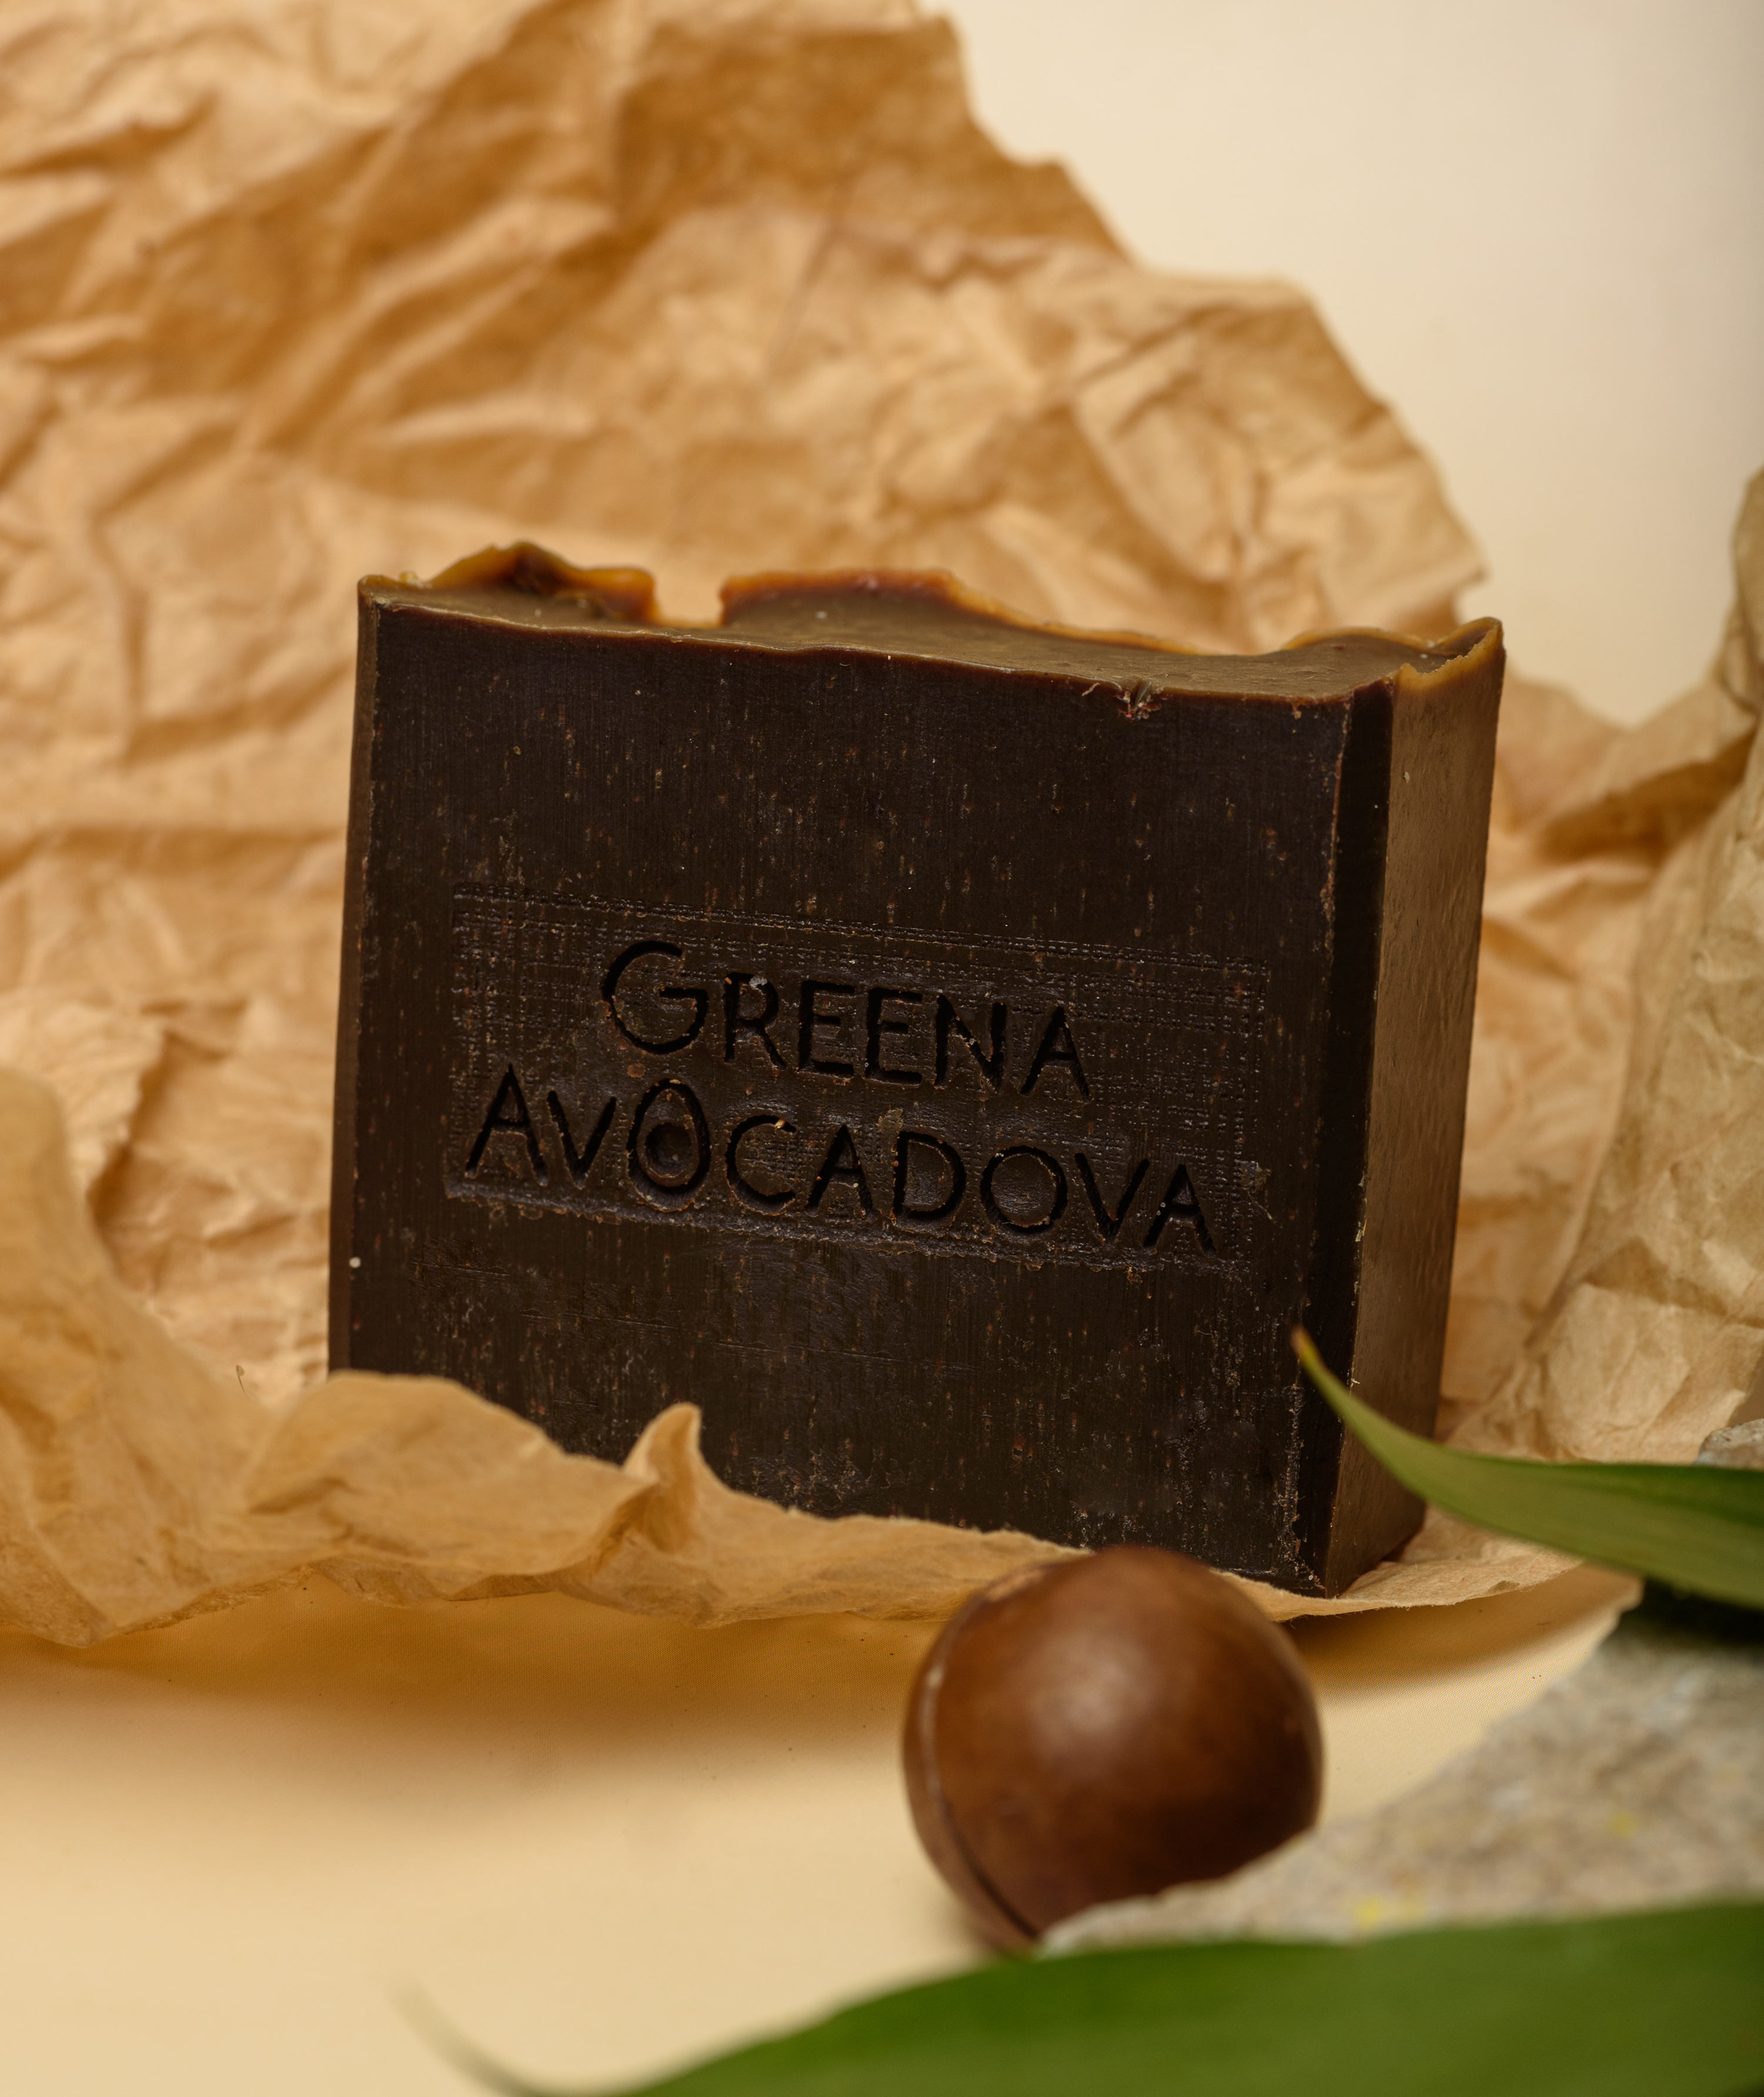 Натурально мыло ручной работы Greena Avocadova шоколад - фото 5